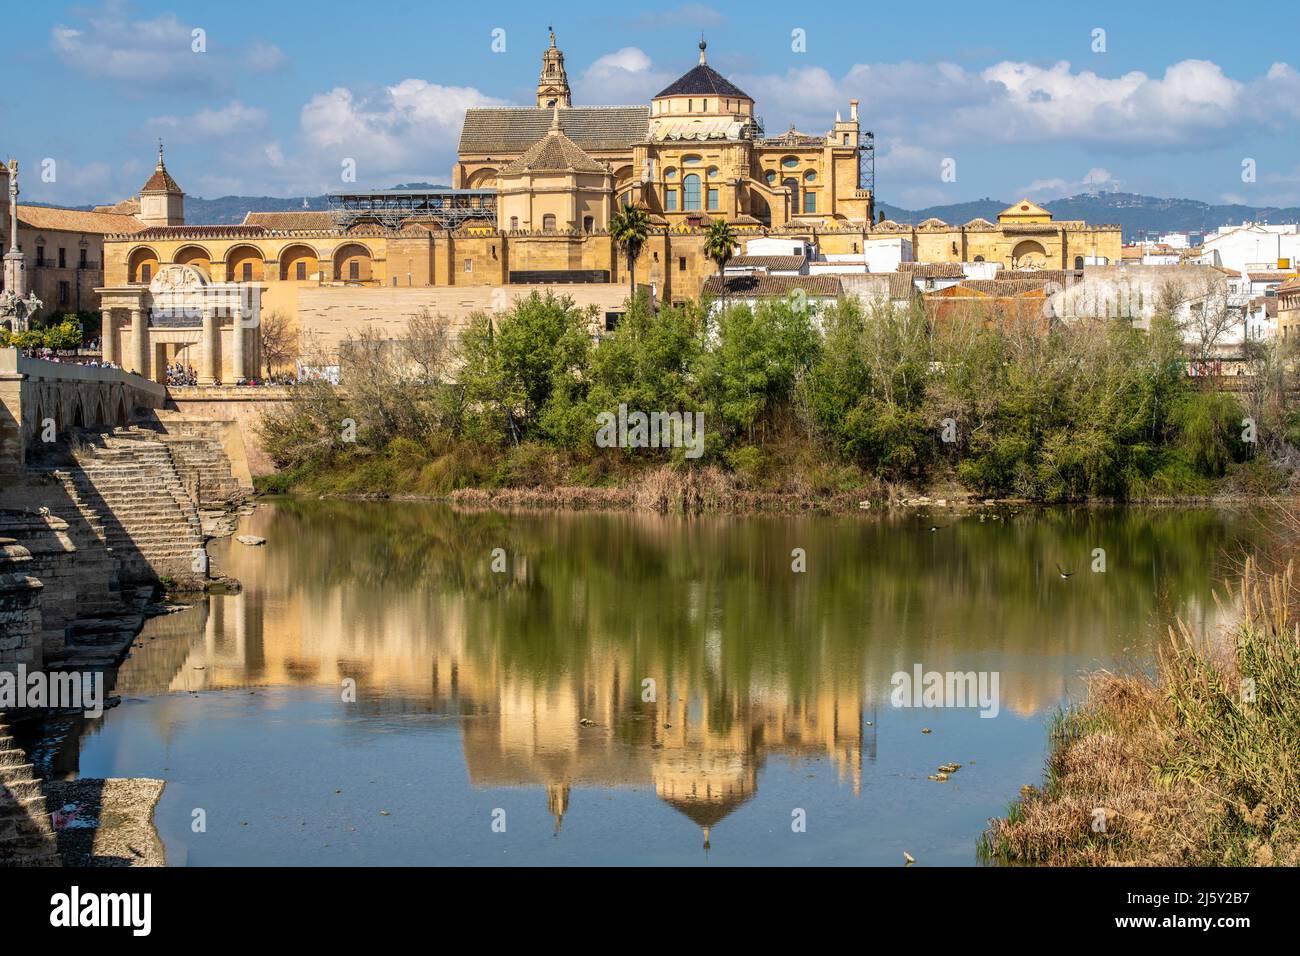 Cathédrale de la Mosquée de Cordoue, Espagne Banque D'Images